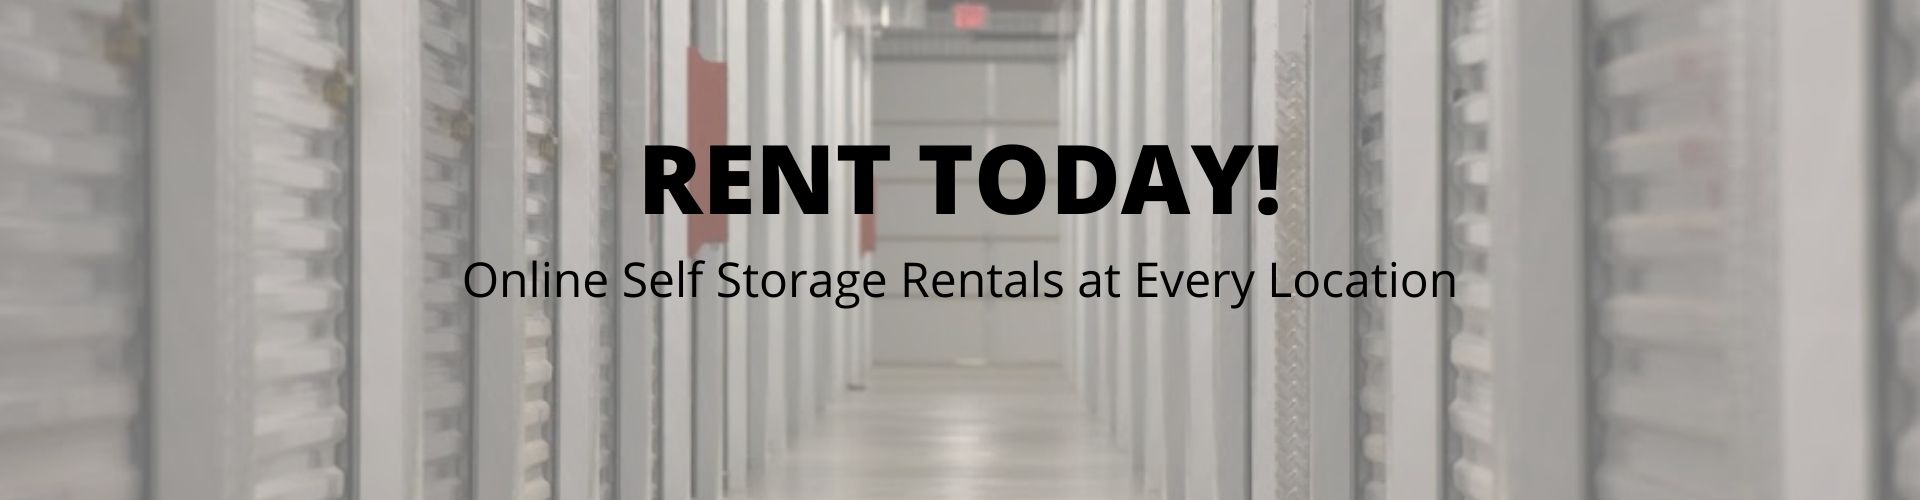 online storage rentals at Cool Spring Storage Center